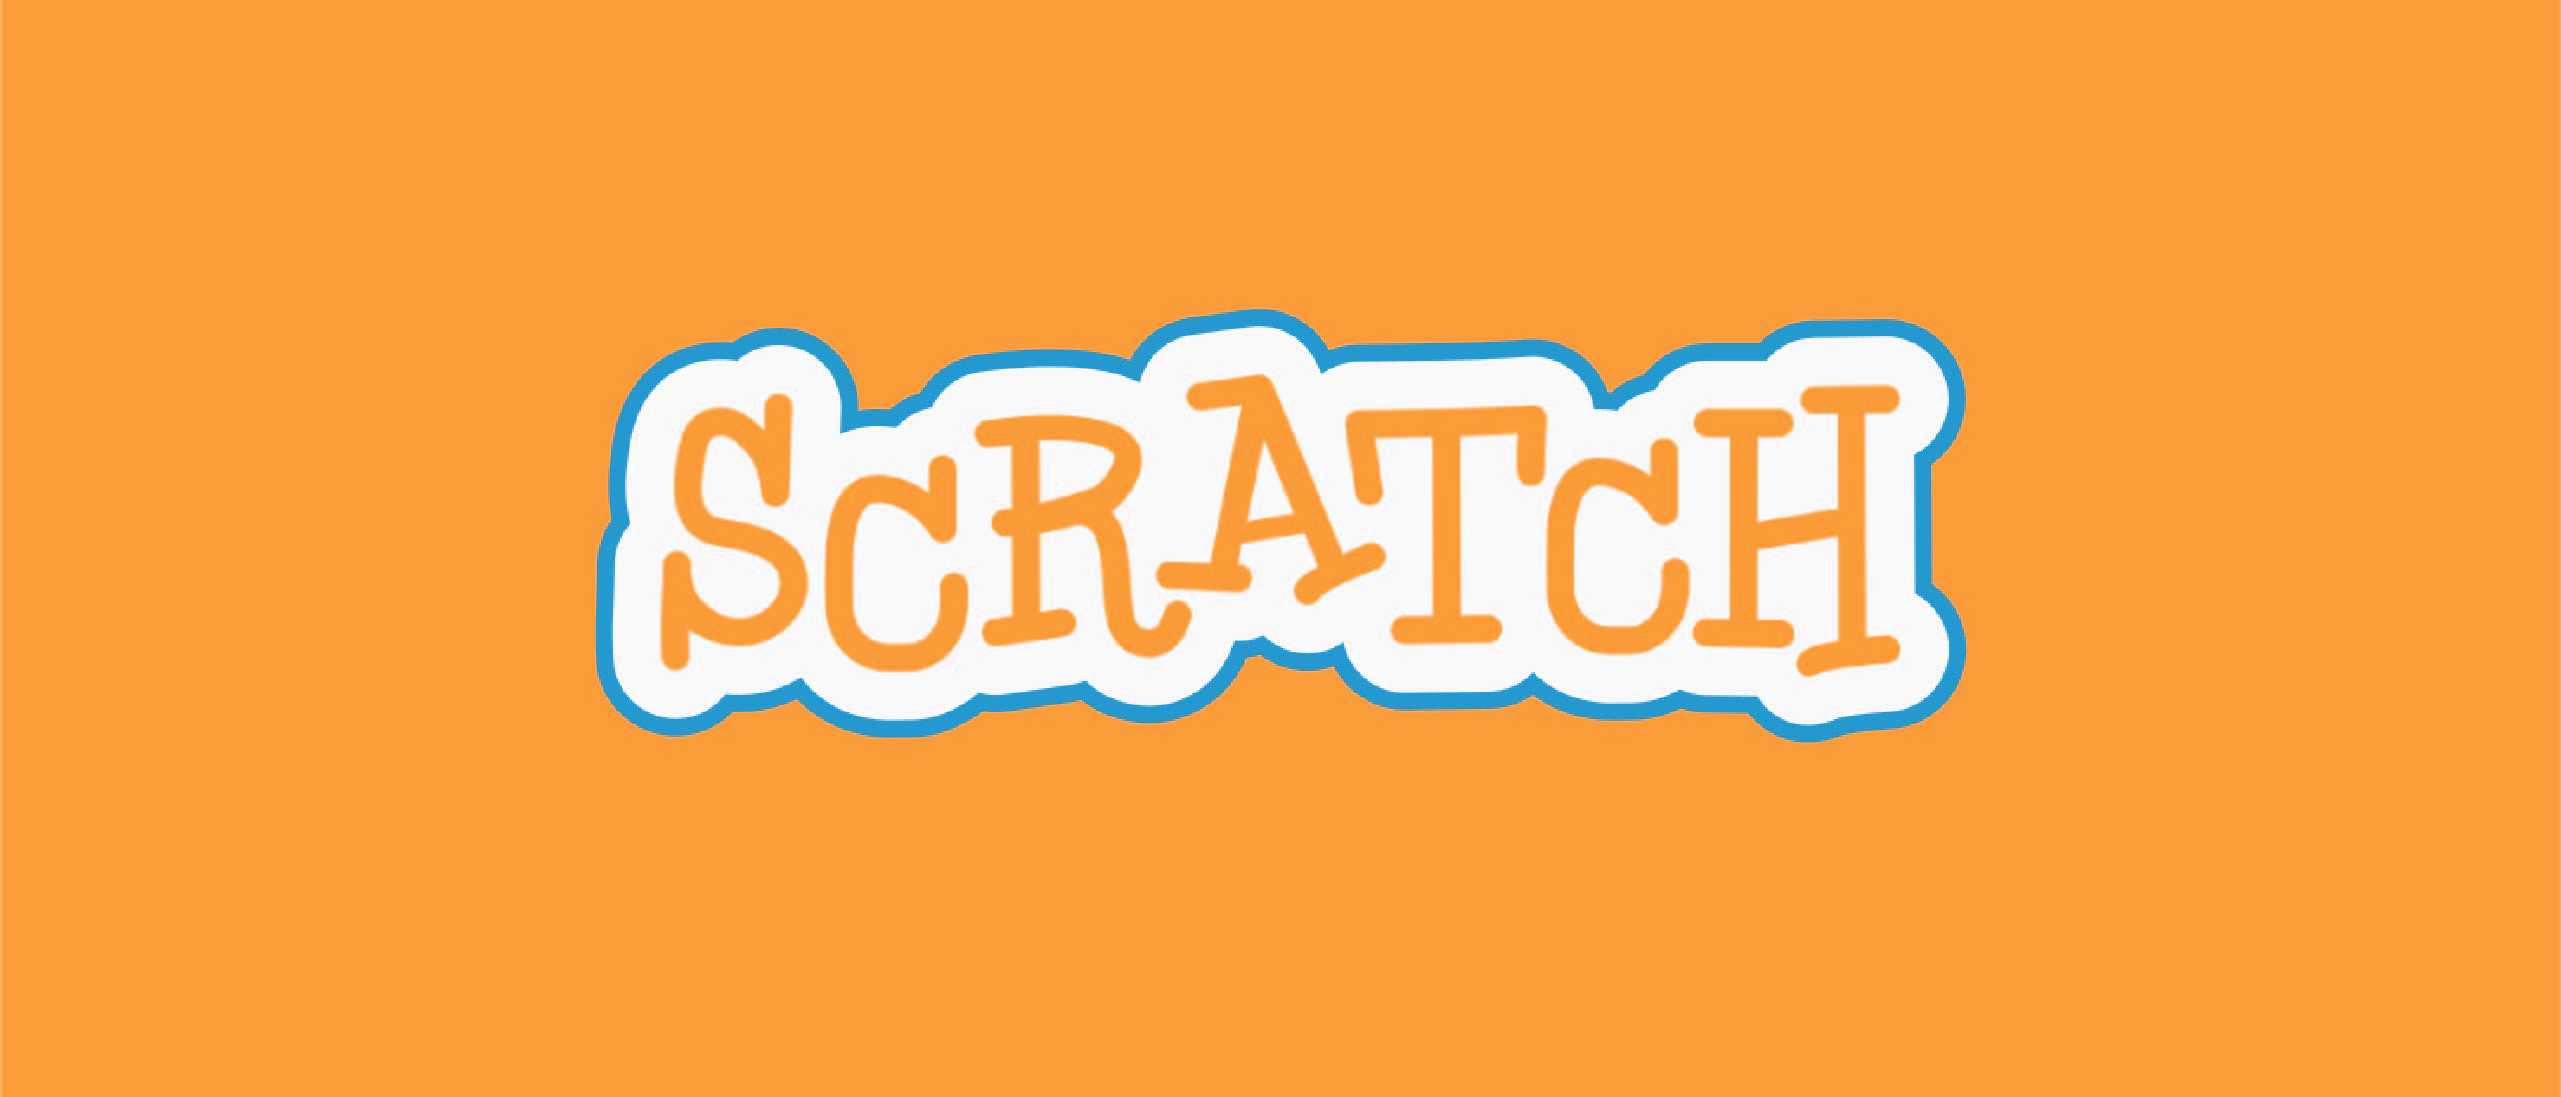 Lập trình với Scratch 3.0 cơ bản